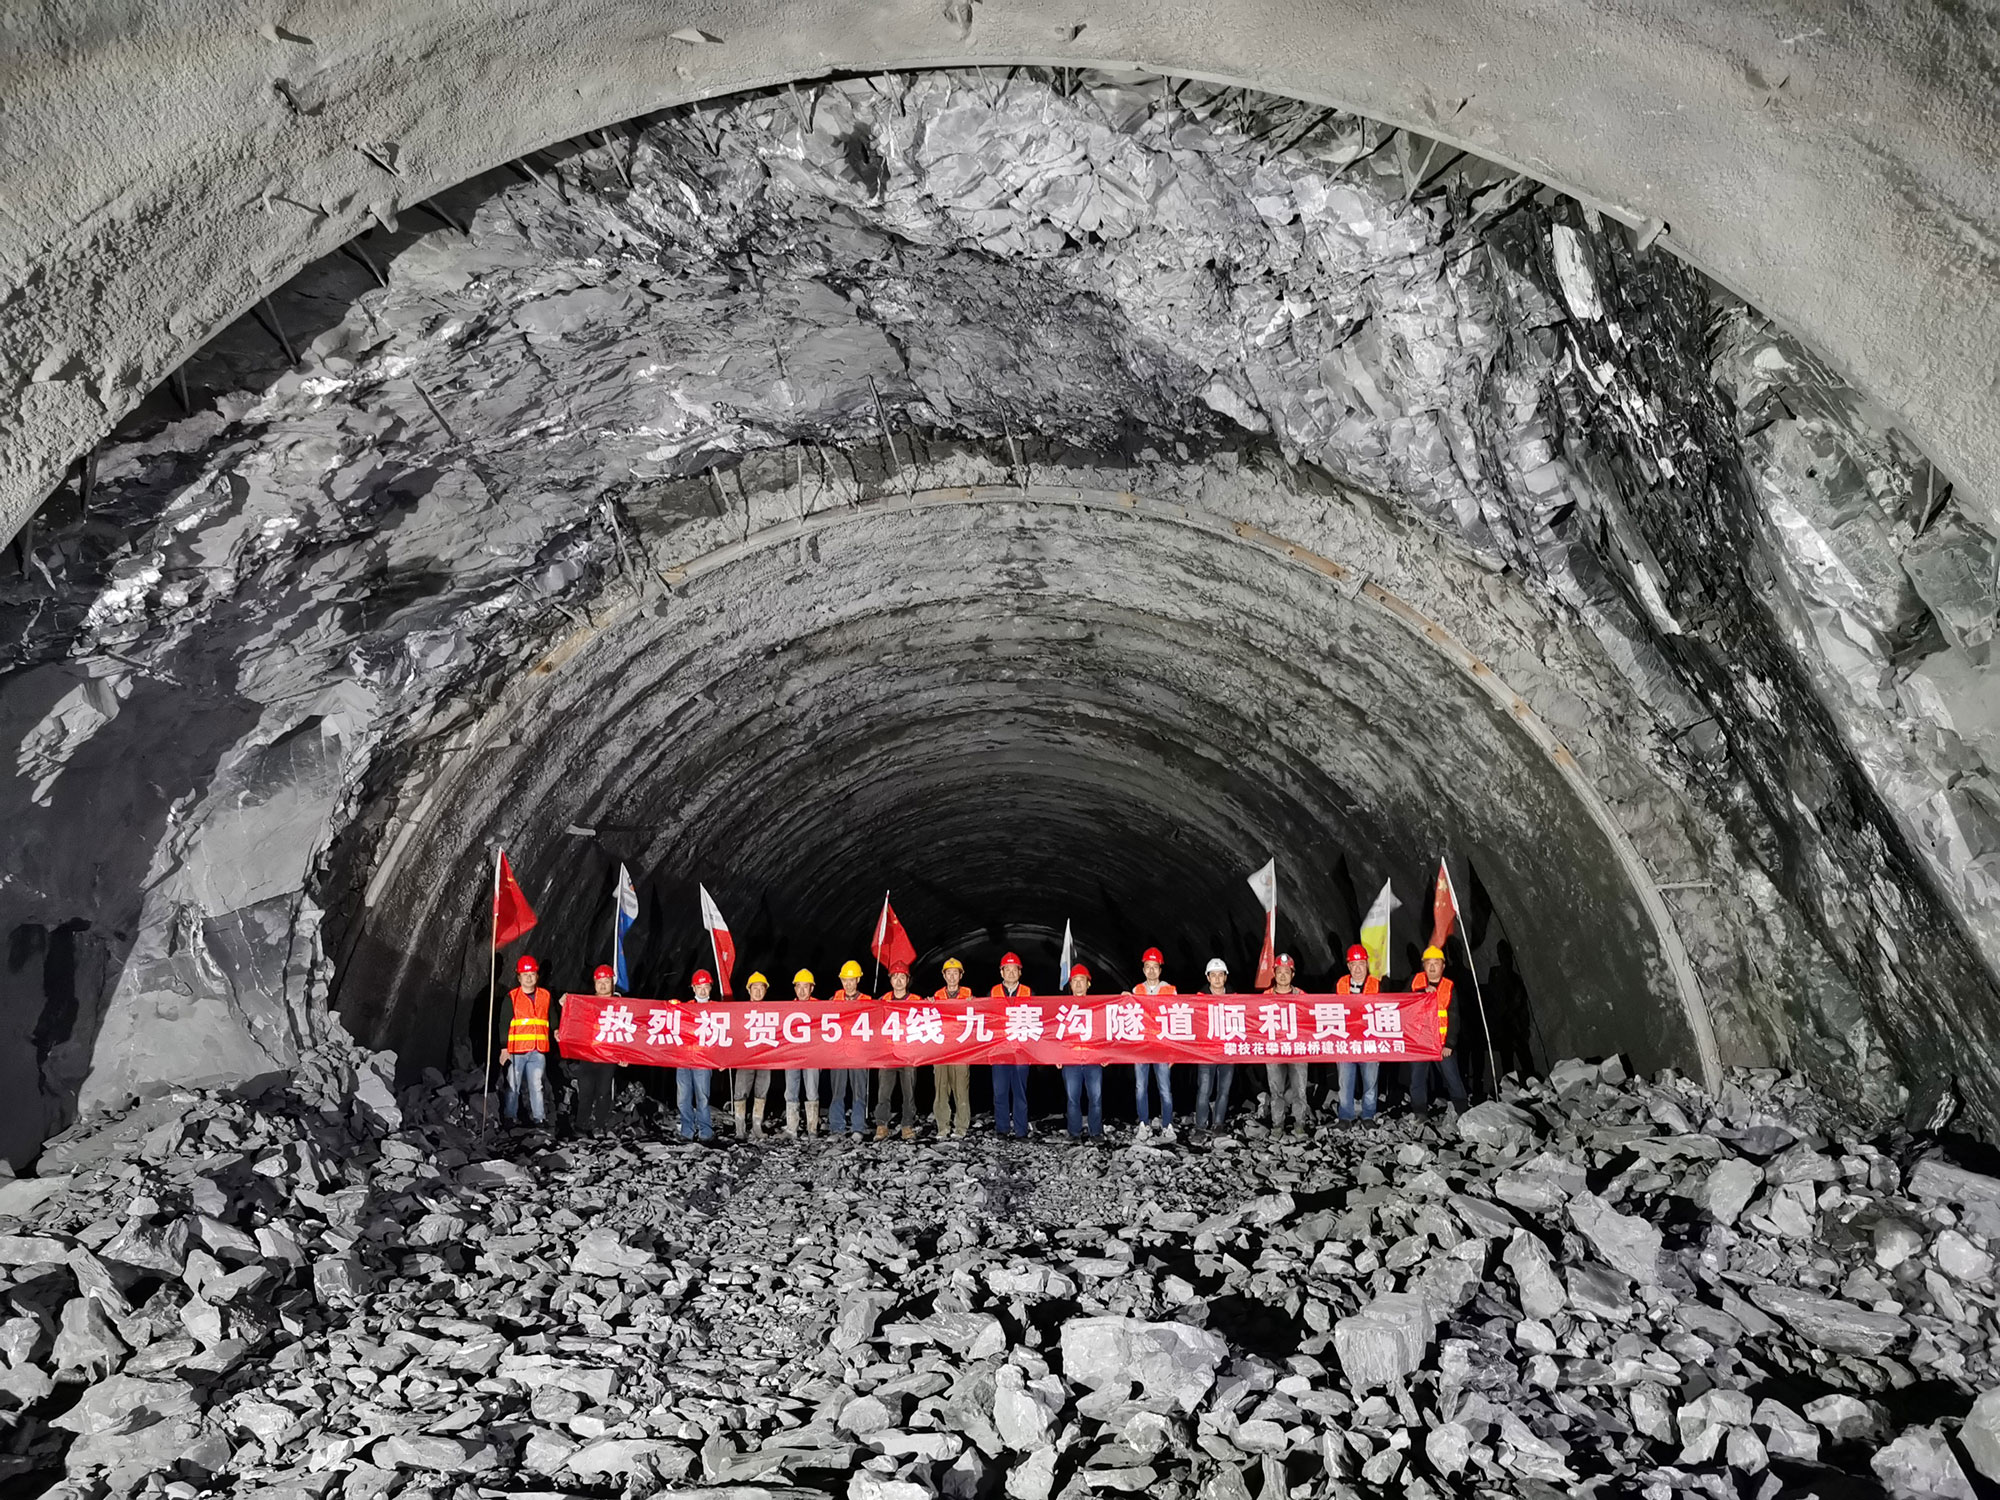 恭喜G544線川主寺至九寨溝縣城段災后恢復重建工程九寨隧道貫通�。�！